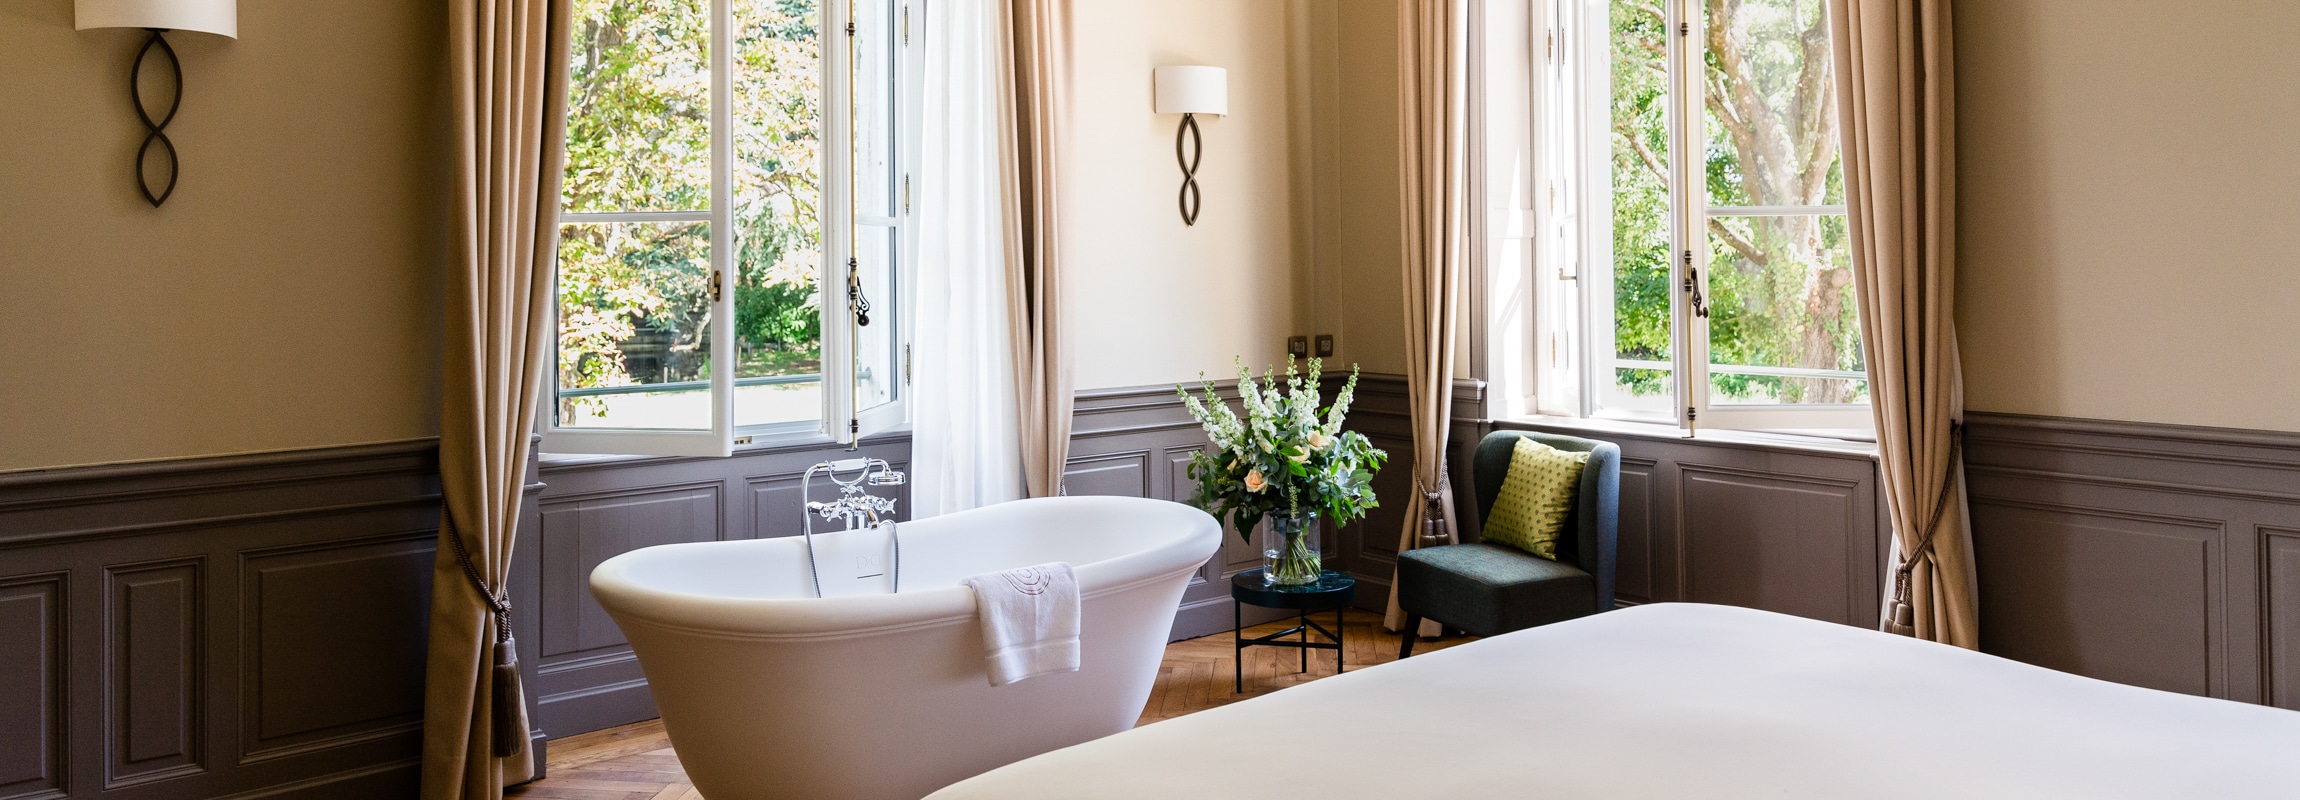 Collain Suite, Château de Montcaud, Hotel Provence, Frankreich. Romantisch, geräumig und lichtdurchflutet. Freistehende Badewanne, separater Wohnbereich. Ideal für einen romantischen Aufenthalt, Flitterwochen oder einen Heiratsantrag.